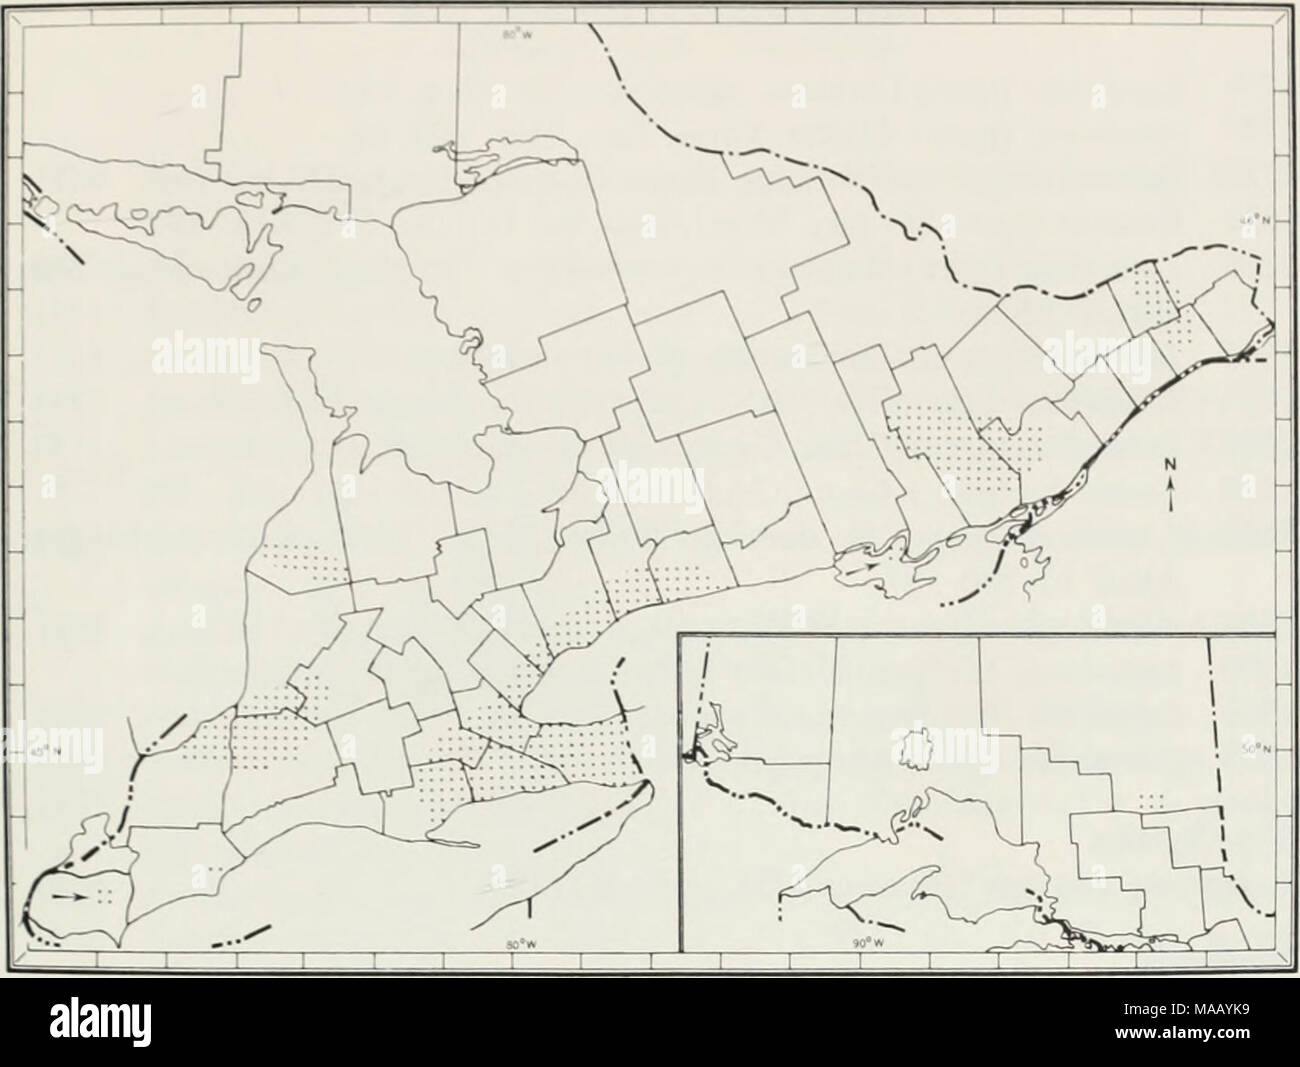 . Die Regenwürmer (lumbricidae und sparganophilidae) von Ontario. Abb. 27 Die bekannte Ontario Verteilung der Eiseniella leiraedra. BRUCE CO.* Hwy 4. 6.77 Km s von Teeswater. Unter anmelden. 5. Mai 72, JWR, 0-1-0. "Highway 21. 6.94 Km n von Kincardine, unter Anmelden, 5. Mai 72, Jwr. 0-0-1. COCHRANE DIST. Reynolds (1972 a). DUR-SCHINKEN CO. Kendal, Kälte schnell Stream, 31. Mai 66, IMS, 4-4-7, ROM-I1. ESSEX CO.* Hwy 3, Ruth - ven, n. e., nasse Graben, neben Eisenbahnschienen, 4. Mai 72, Jwr. 0-0-2. FRONTENAC CO." Highway 15, 4.03 km n von Hwy 401, unter Papier in feuchten Graben, 16. Mai 72. JWR, 1-0-1. "Highway 41, 1,29 km n von Cloyne, Stockfoto